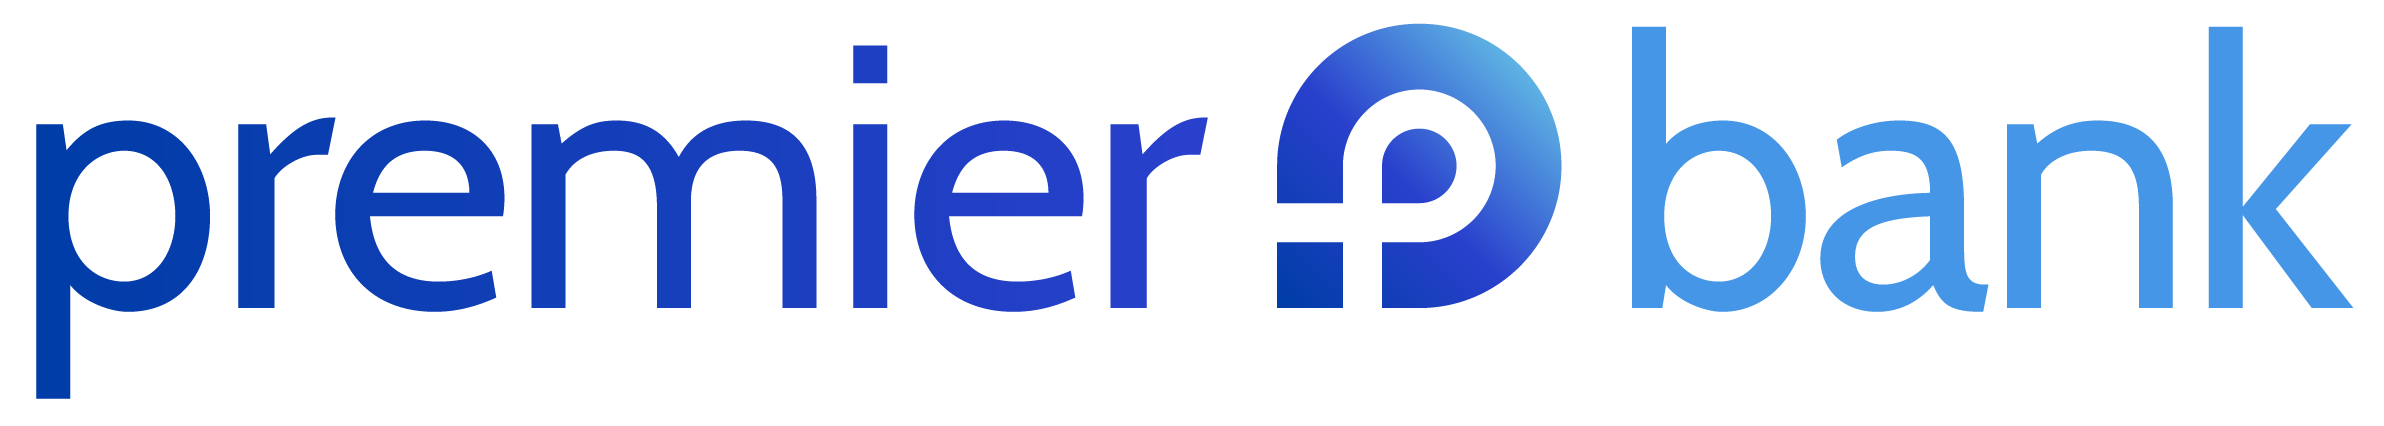 premier bank logo